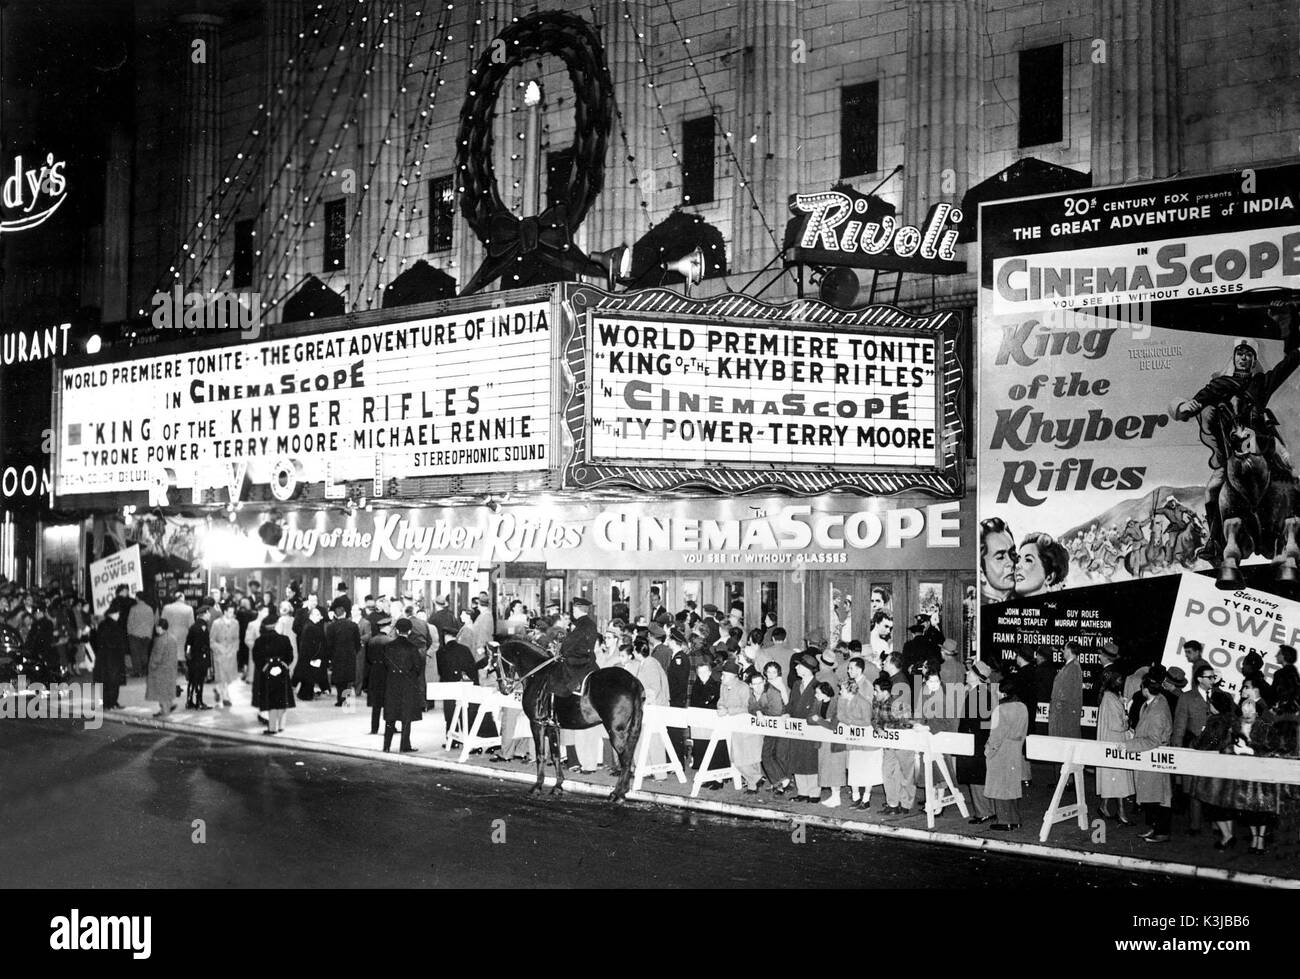 Le Rivoli THEATRE, 1645 Broadway, NEW YORK World premiere de KING OF THE KHYBER RIFLES [1953] NOUS La publicité marqee met en évidence la 20th Century Fox's photographic anamorphique CinemaScope - Système - et mentionne également le son stéréophonique qui Fox utilisé avec ses premiers films "CHAMP DU RIVOLI THEATRE, 1645 Broadway, NEW YORK World premiere de KING OF THE KHYBER RIFLES Date : 1953 Banque D'Images